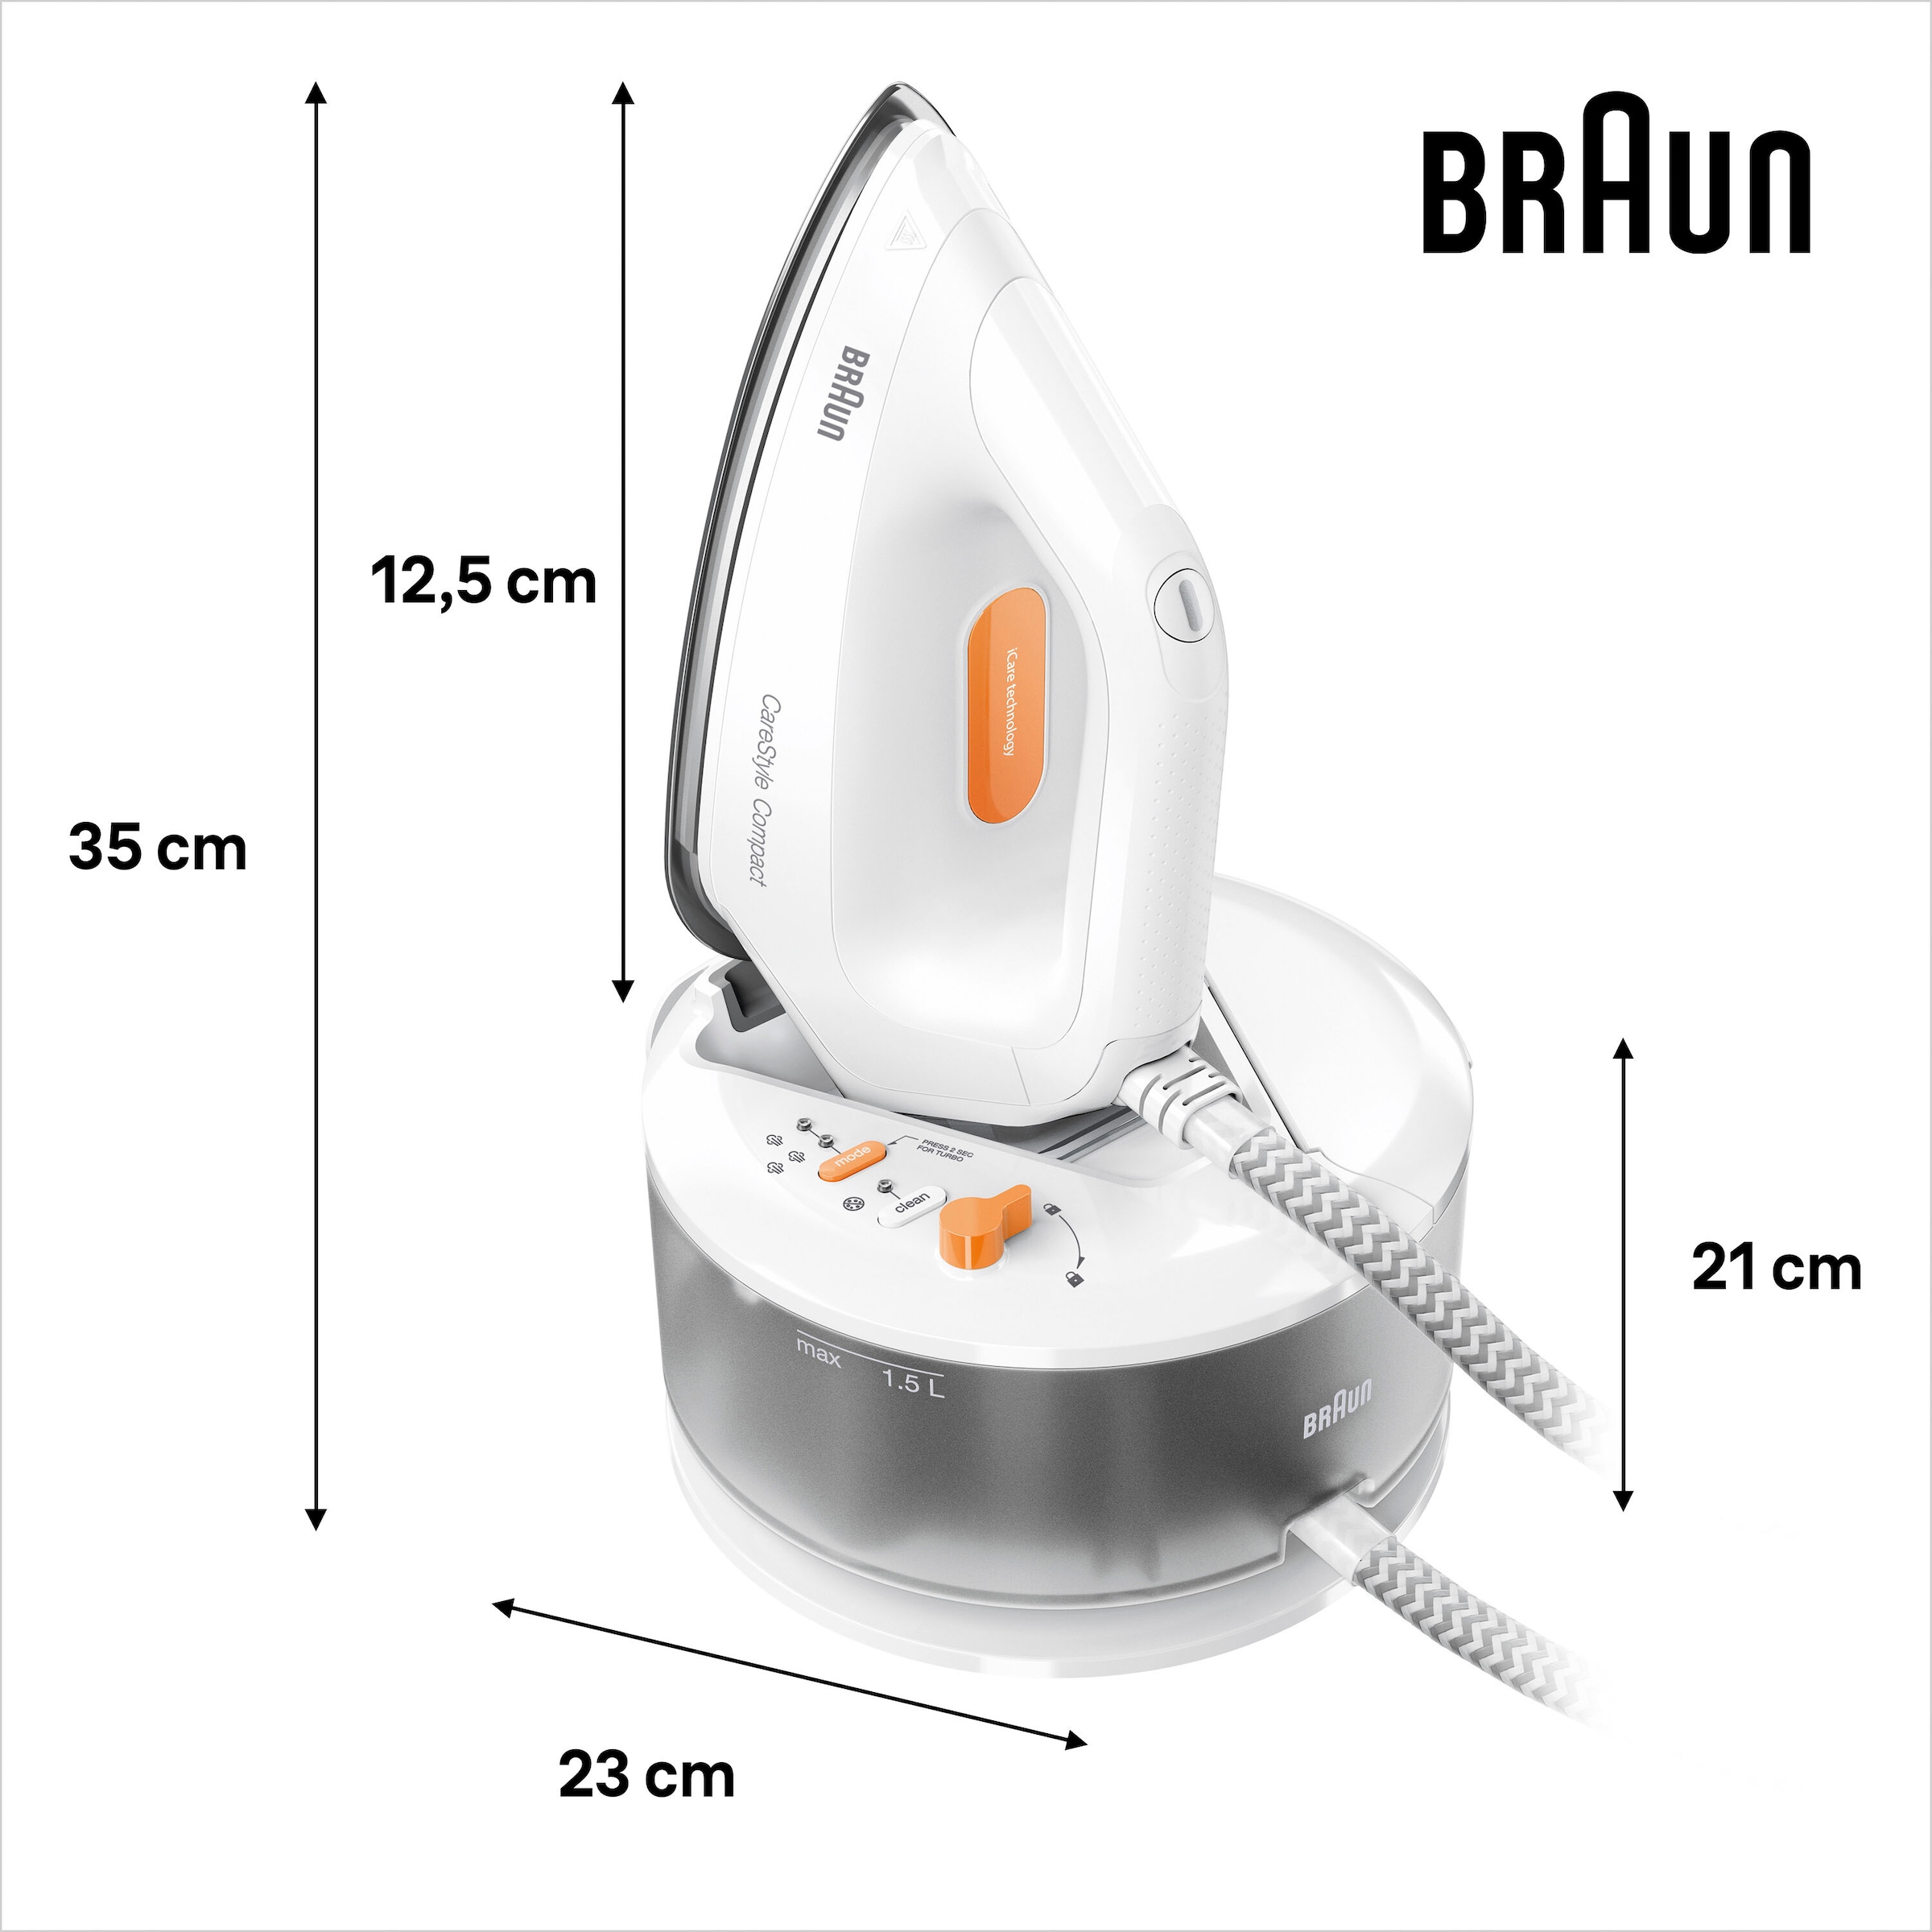 Braun Dampfbügelstation »CareStyle Compact IS 2132«, weiß, max. Dampfmenge  400g/min, Rückwärtsbügeln über Knöpfe online bestellen